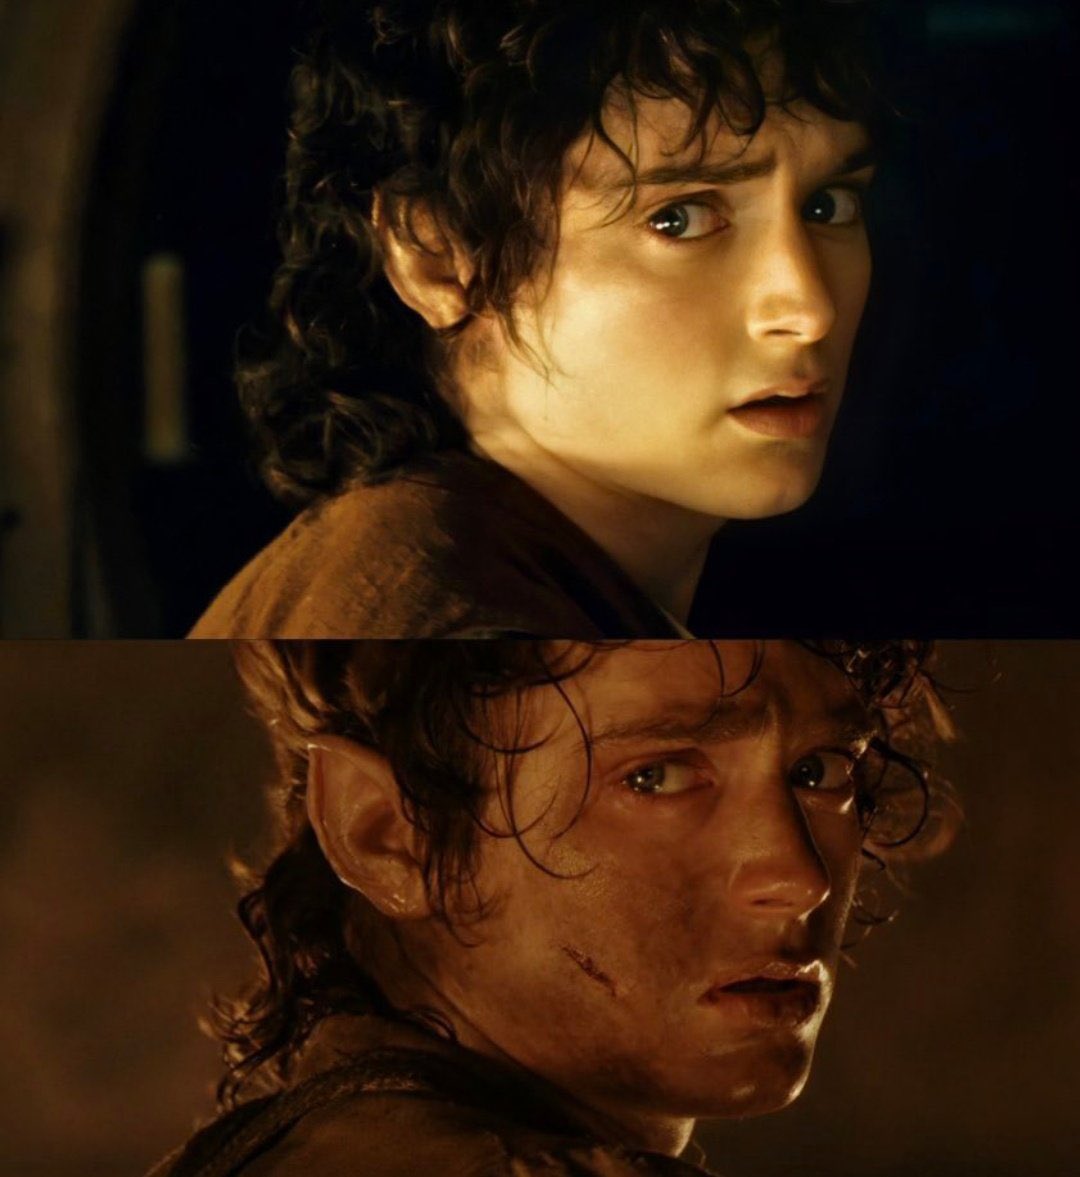 La evolución de Frodo es BRUTAL. De la Comarca a salvador de la Tierra Media. 🔥